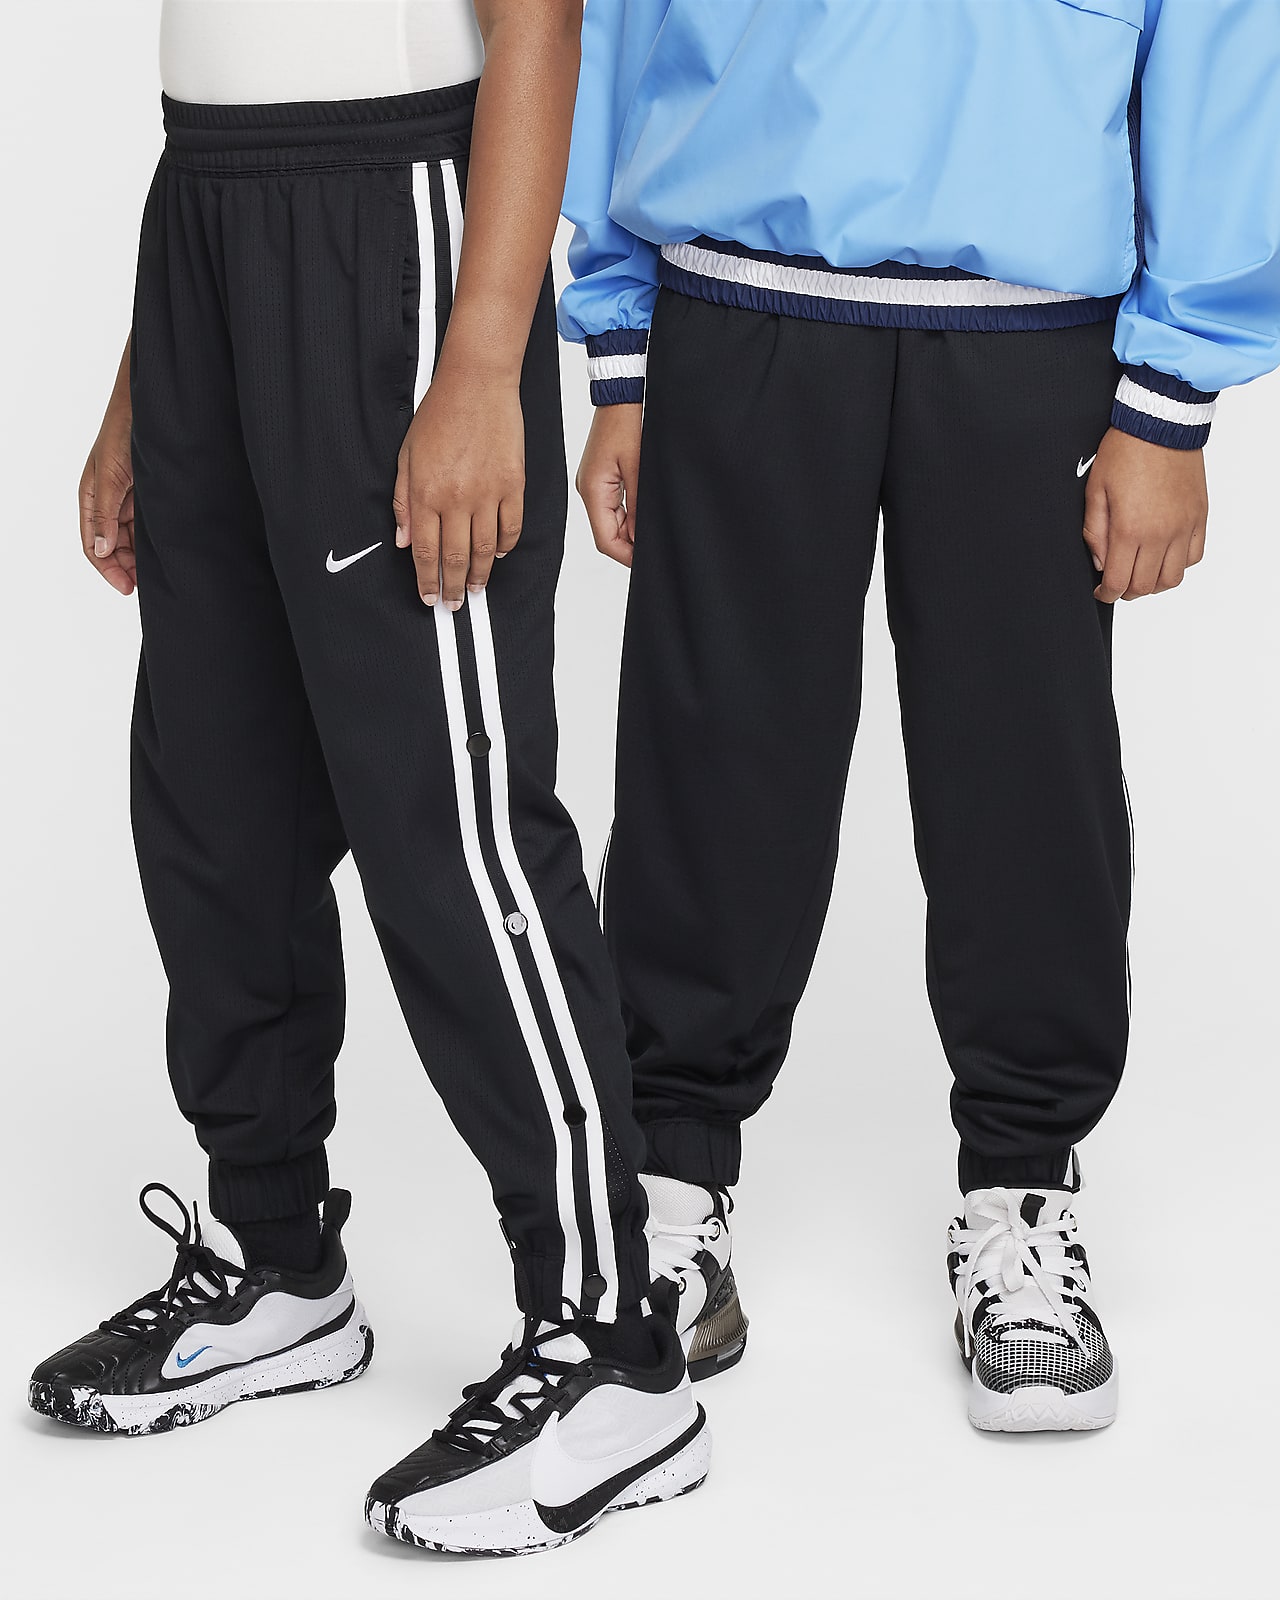 Nike Big Kids' Tear-Away Basketball Pants